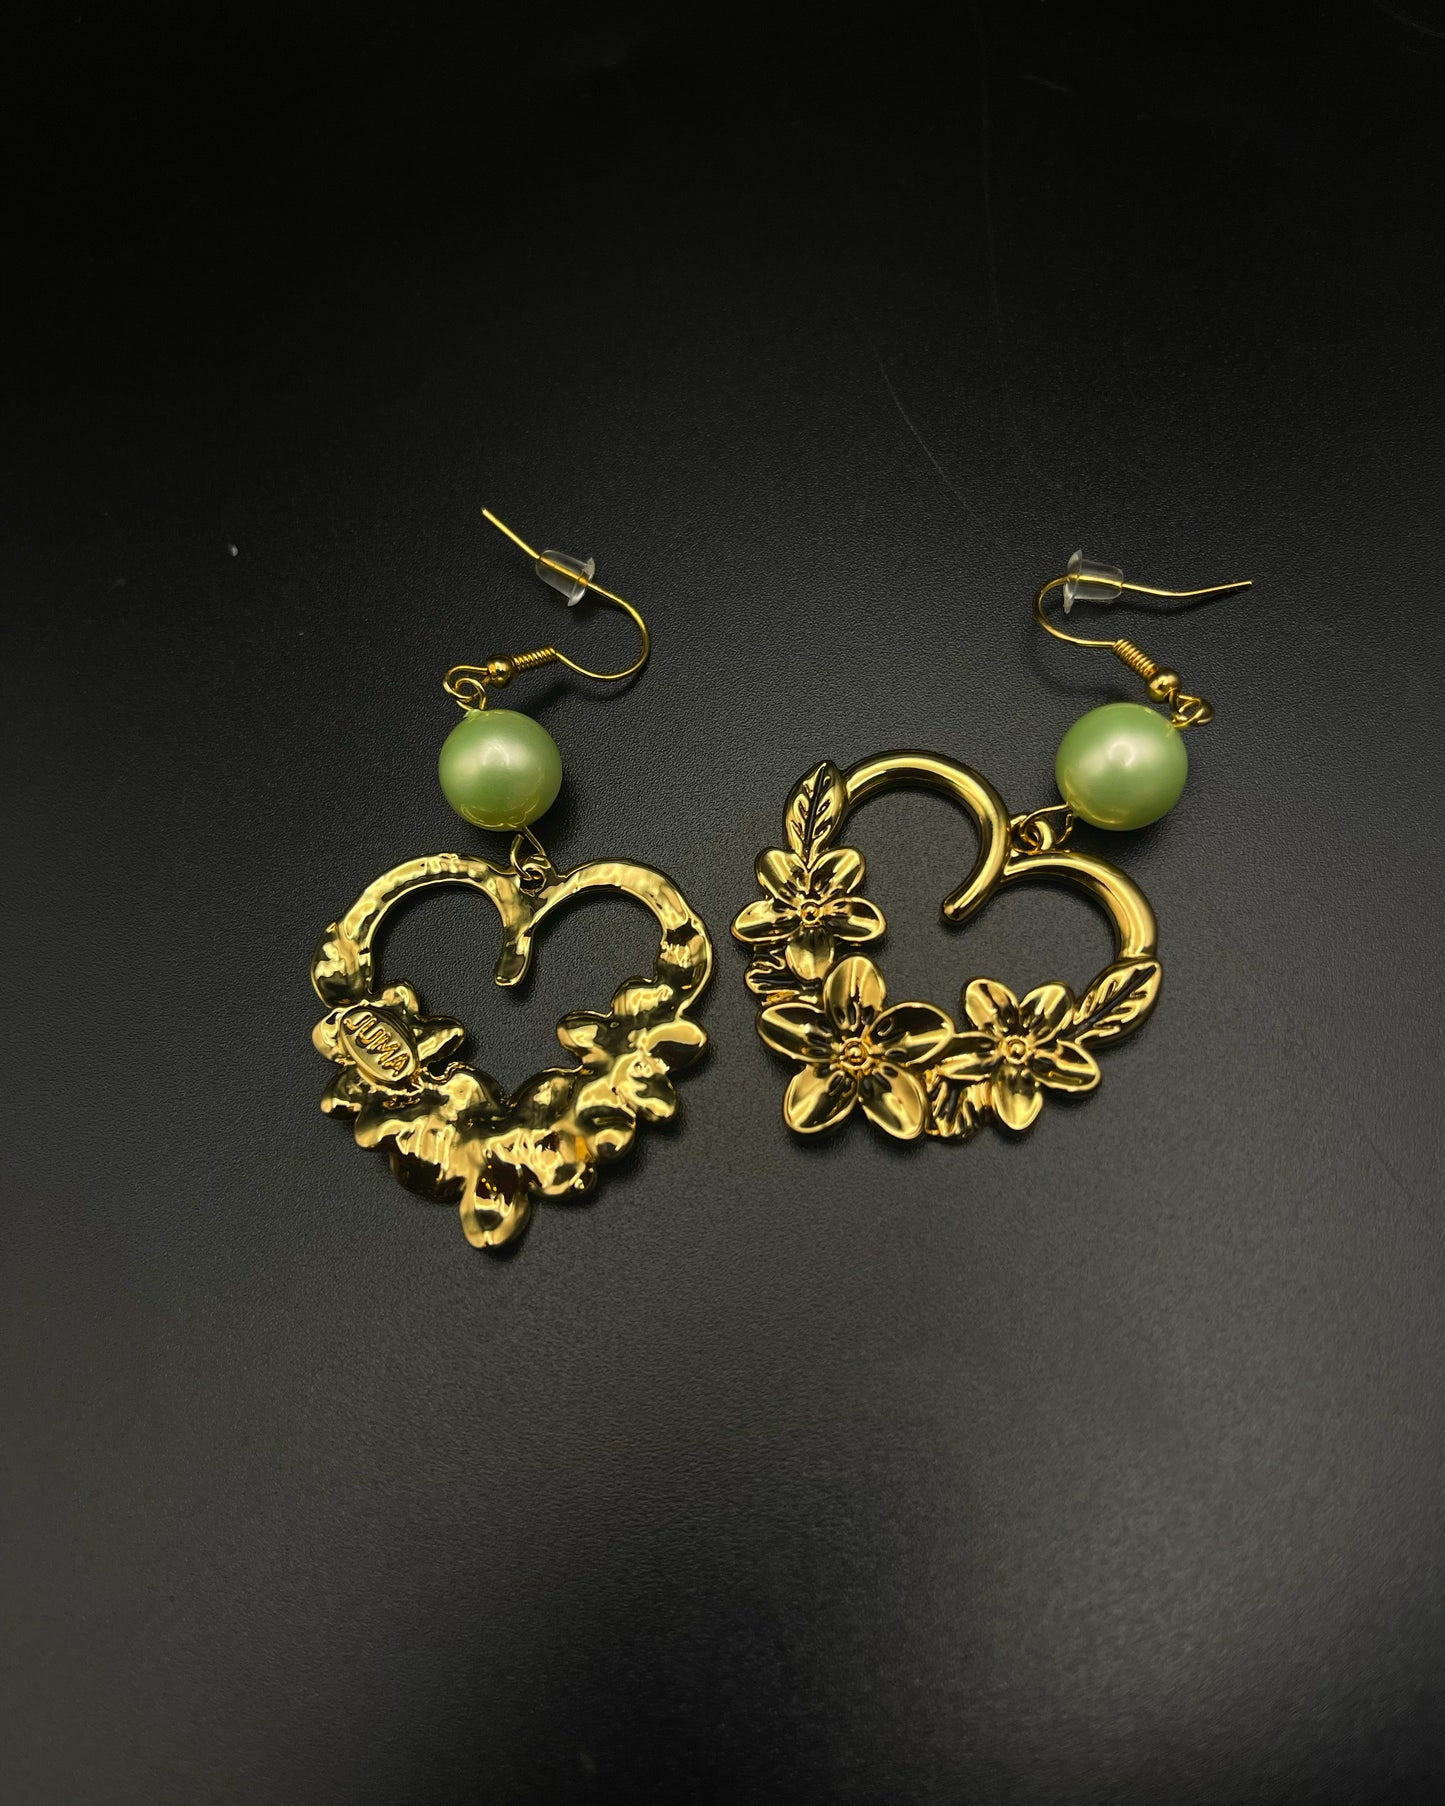 Floral heart earrings